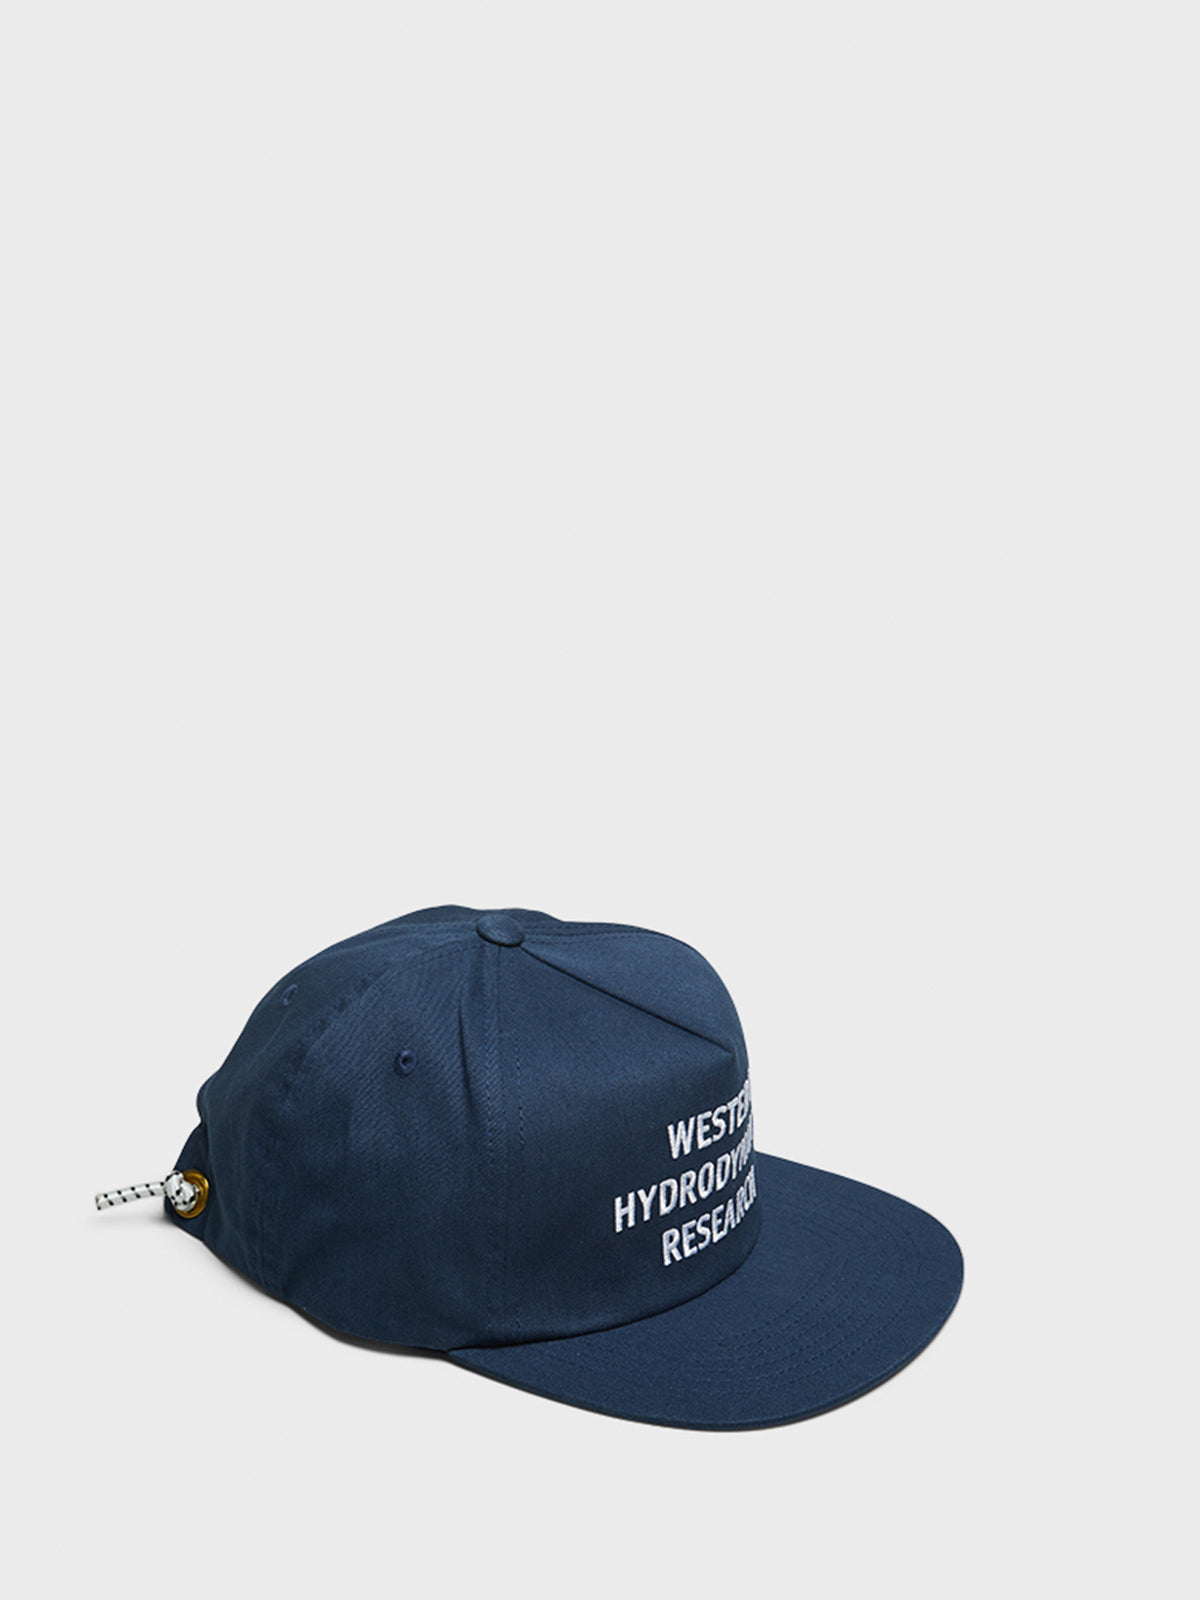 Promo Hat i Navy